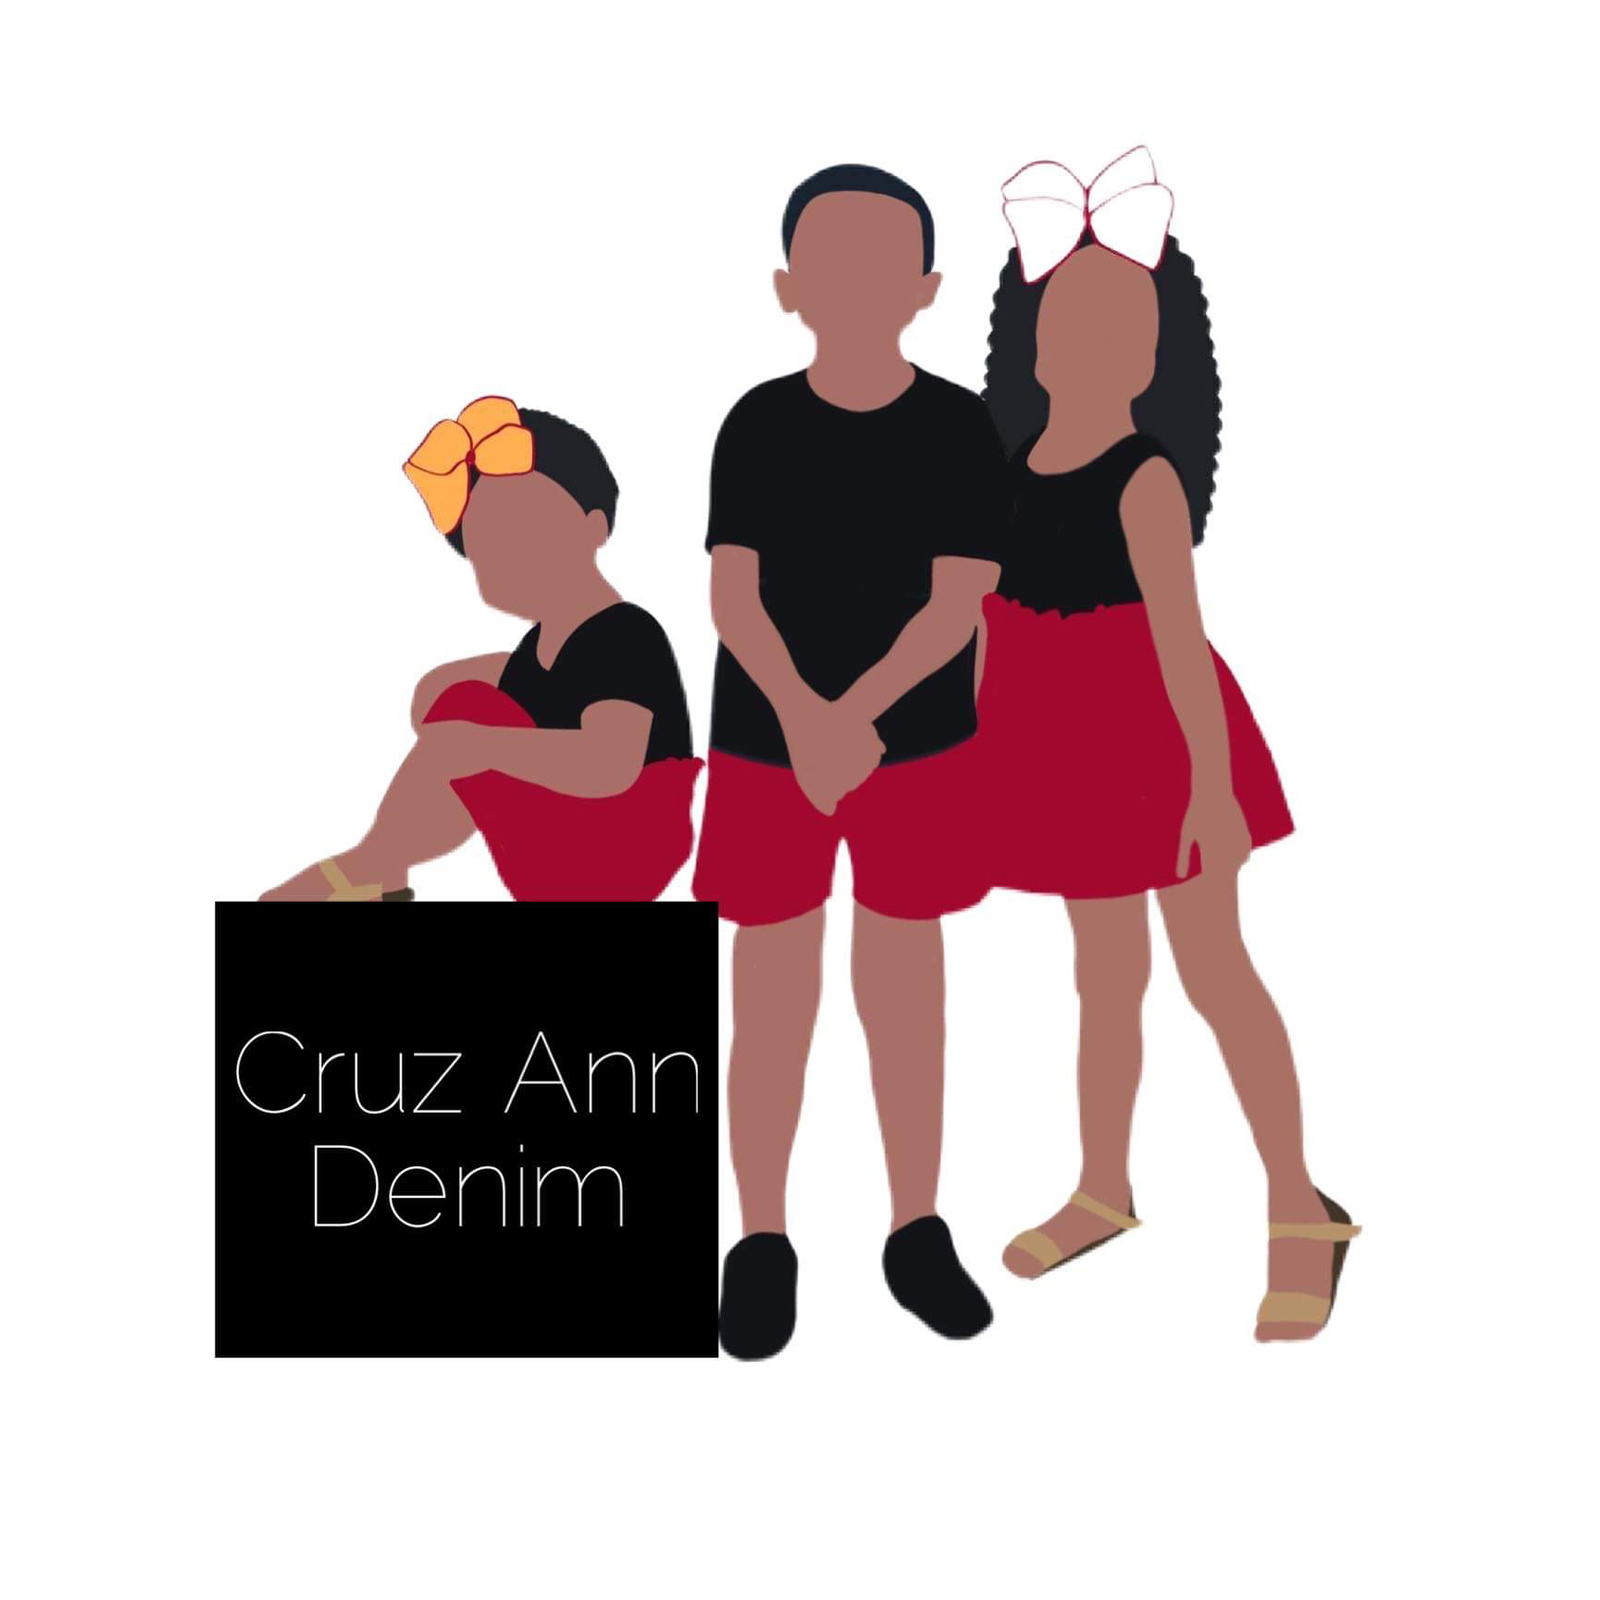 Cruz Ann Denim